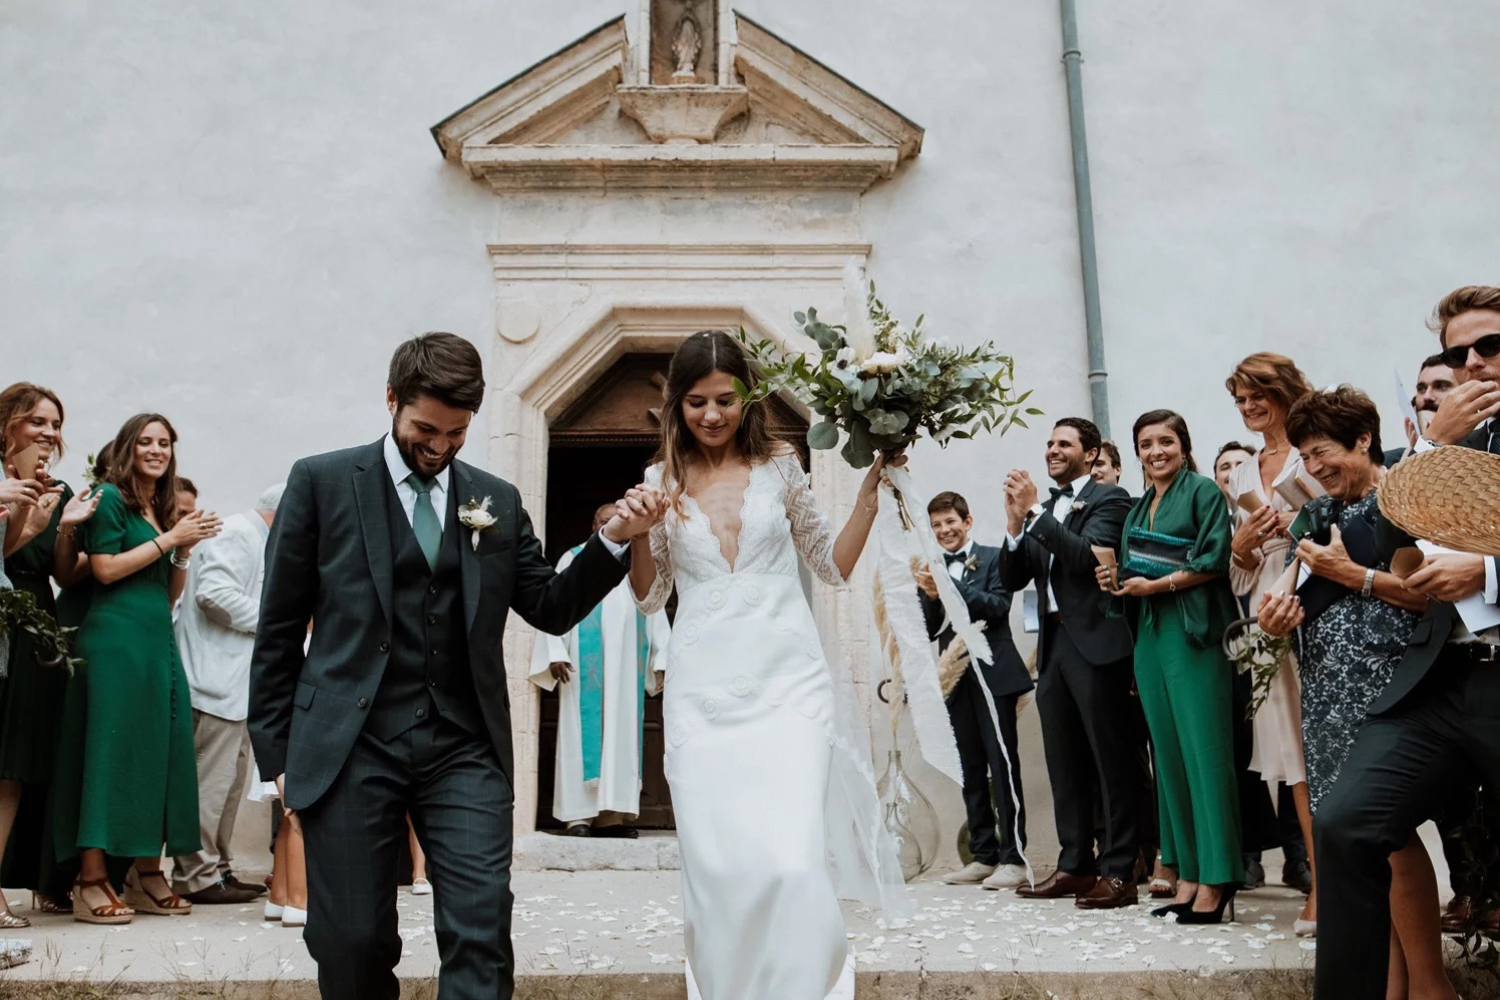 Un couple de jeunes mariés sortant de l’église en se tenant par la main. En arrière plan, on aperçoit les invités applaudissant.